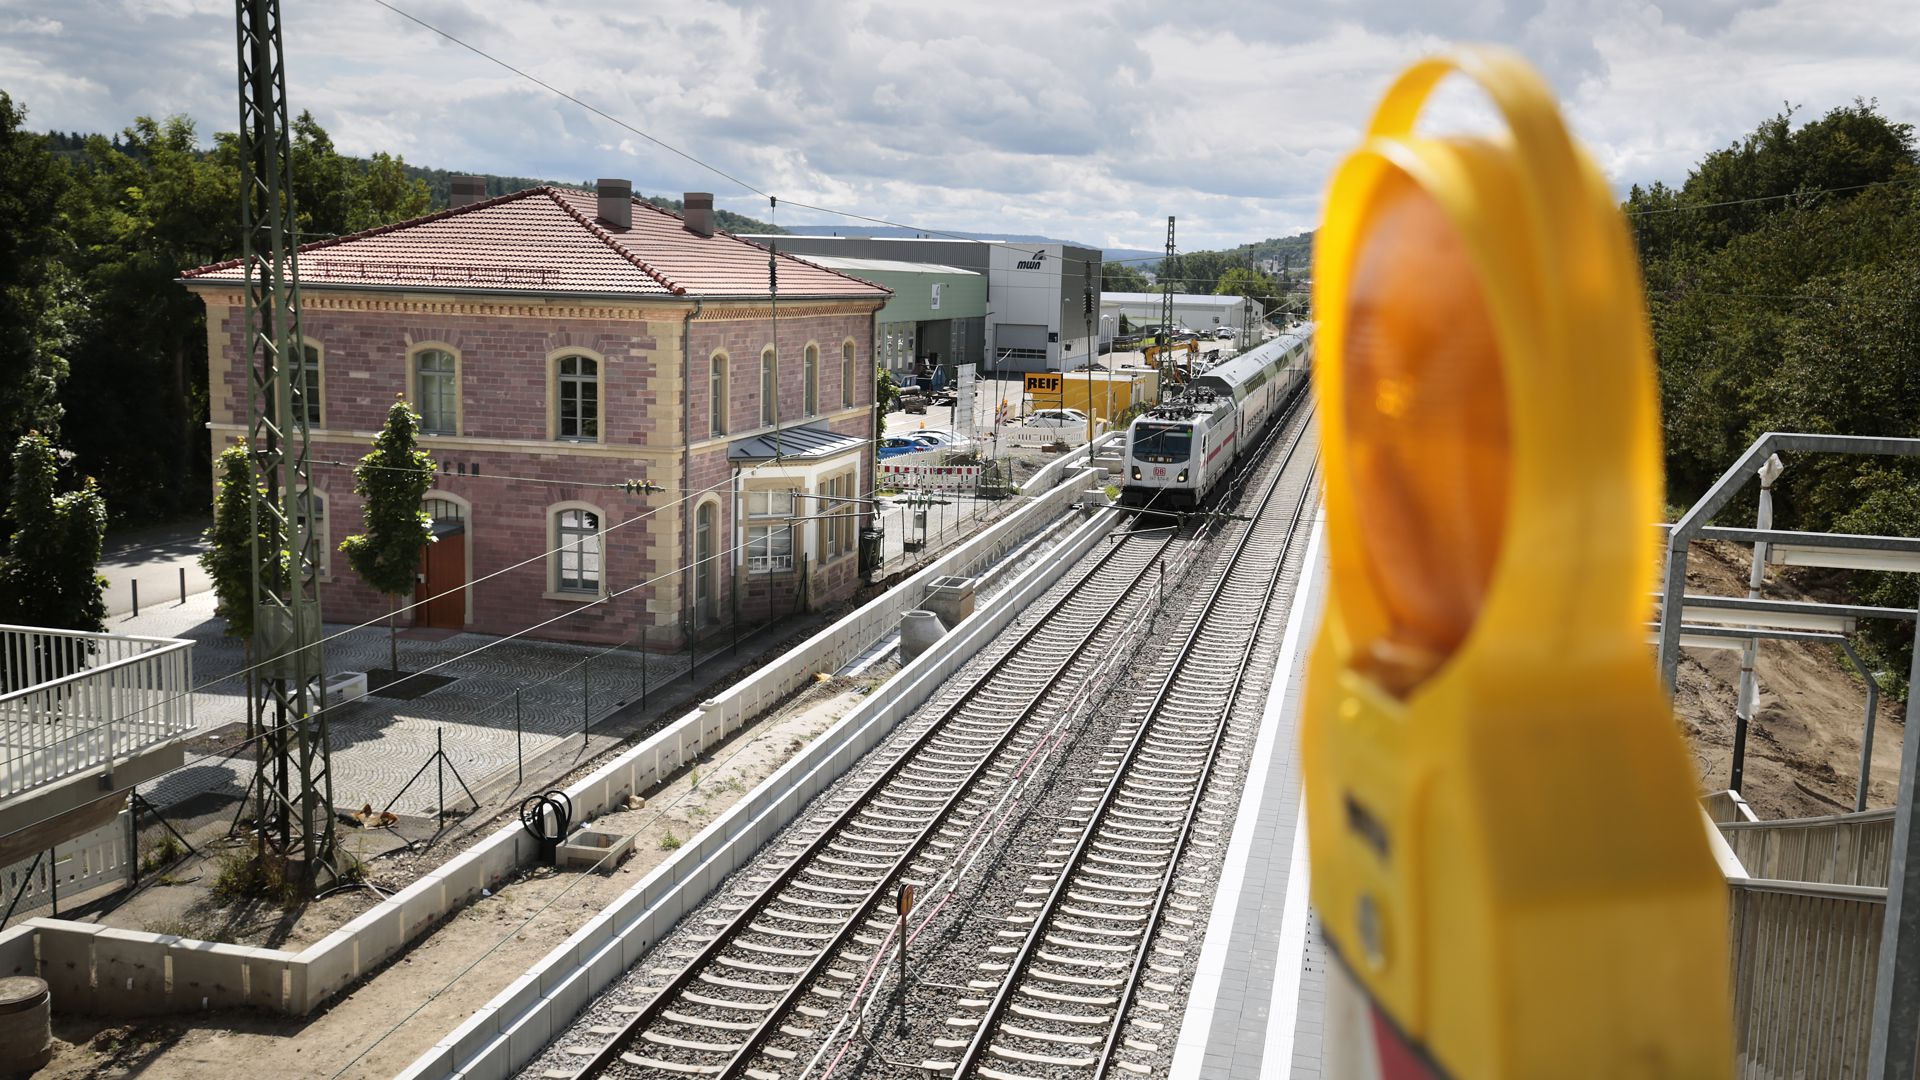 Der Bahnhof Niefern von schräg oben fotografiert. Ein IC hält Durchfahrt. Es sind Bauarbeiten am Bahnsteig zu sehen.